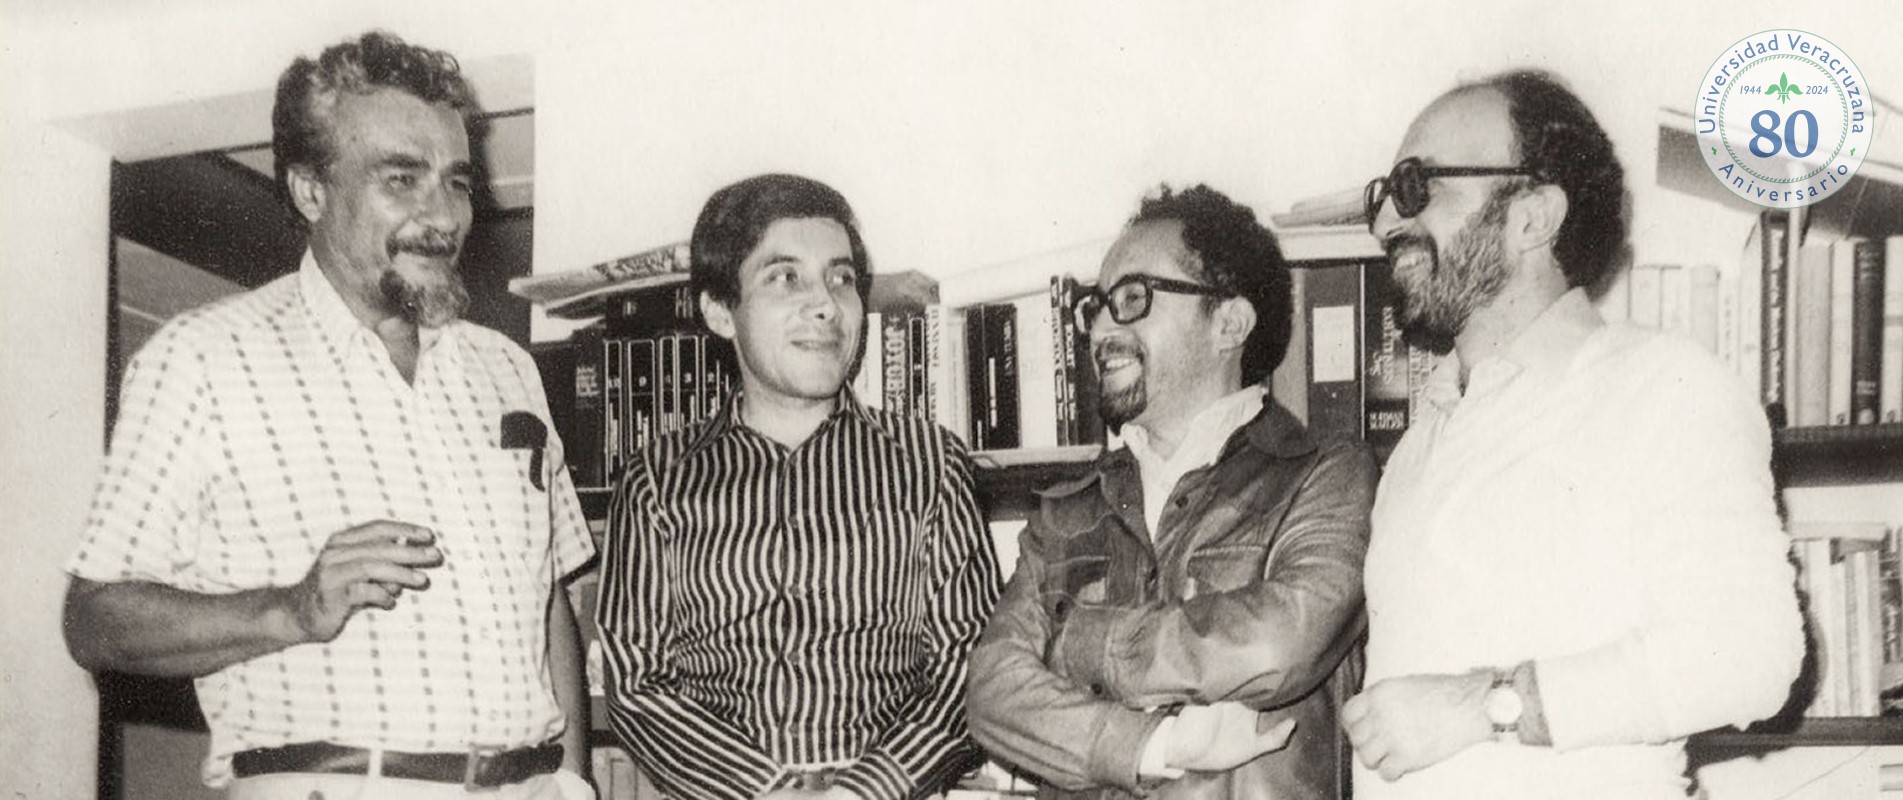 Miguel Donoso Pareja, Mario Muñoz, Renato Prada Oropeza y Jorge Ruffinelli. Xalapa, Ver. 1976. Fotografía: Elda Rojas de Prada